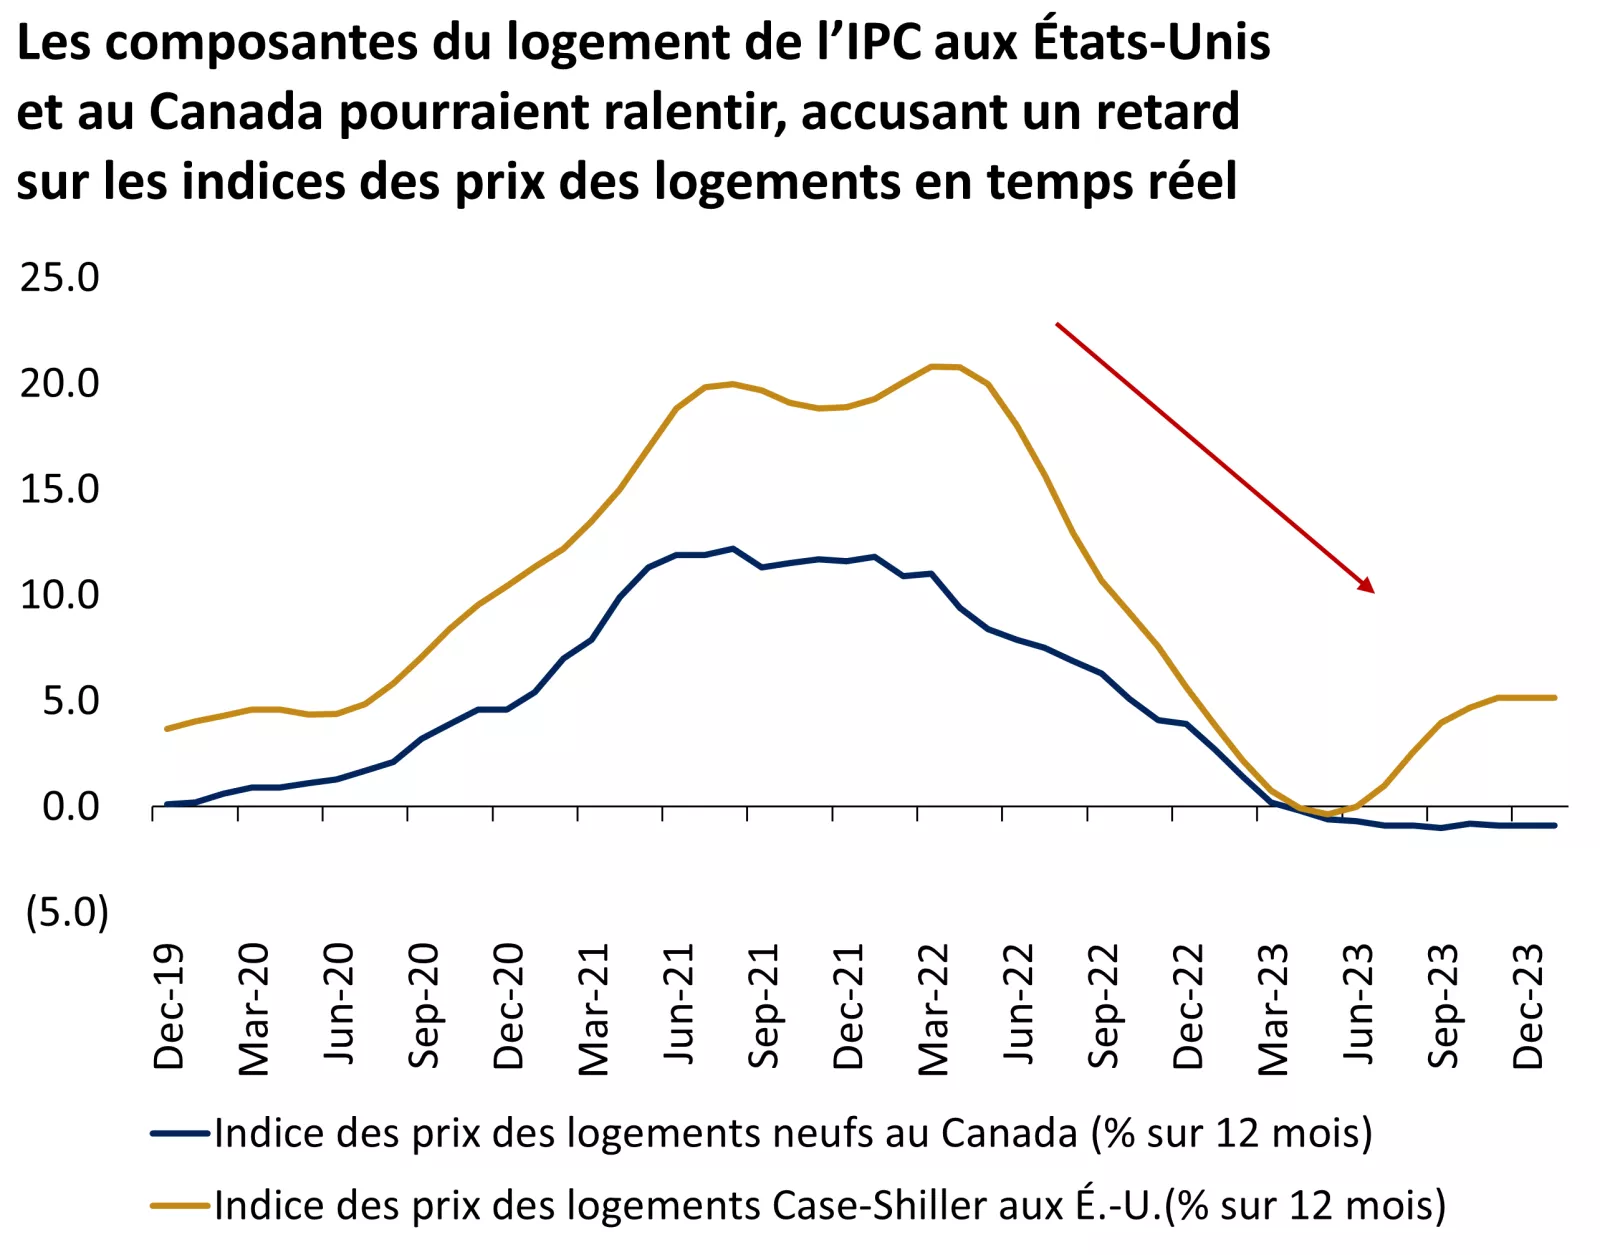  Ce graphique montre la variation sur 12 mois de l’indice des prix des logements S&P Case-Shiller aux États-Unis et de l’indice des prix des logements neufs au Canada.
